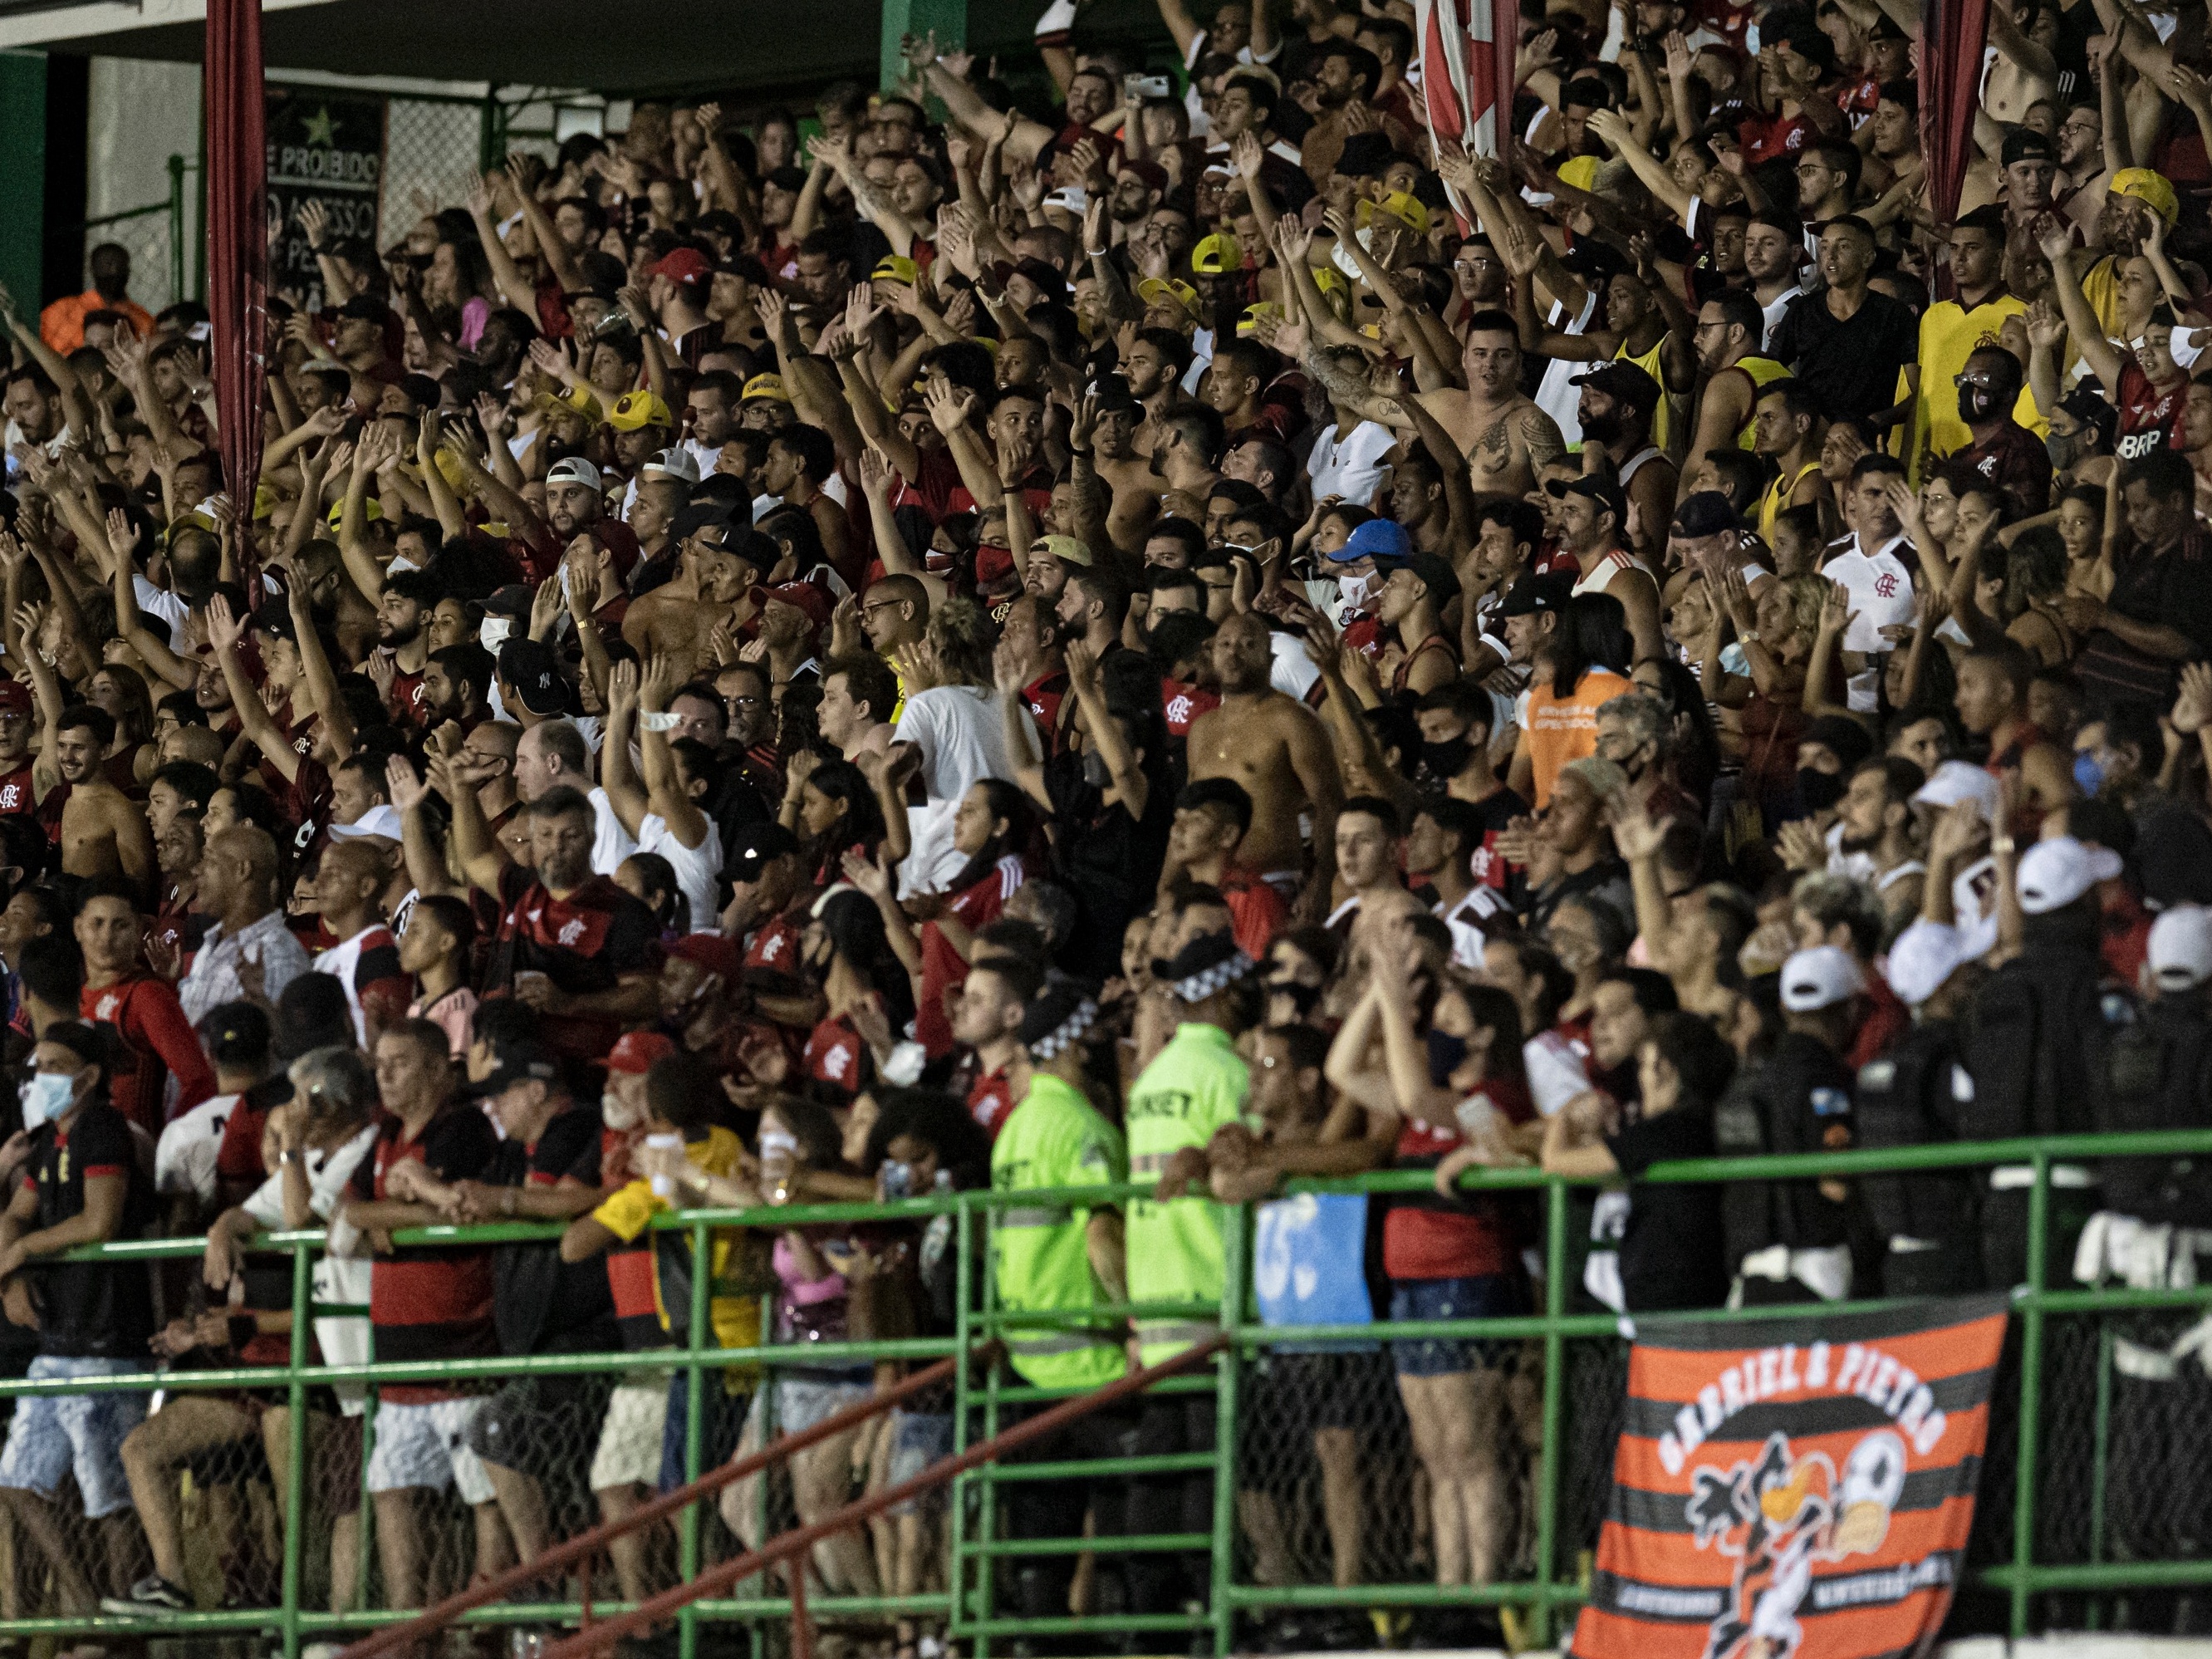 Flamengo on X: Amanhã tem Mengão! O Mais Querido enfrenta o Volta Redonda,  às 21h05, no Raulino de Oliveira, no jogo de ida da semifinal do @cariocao!  Acompanhe ao vivo e com